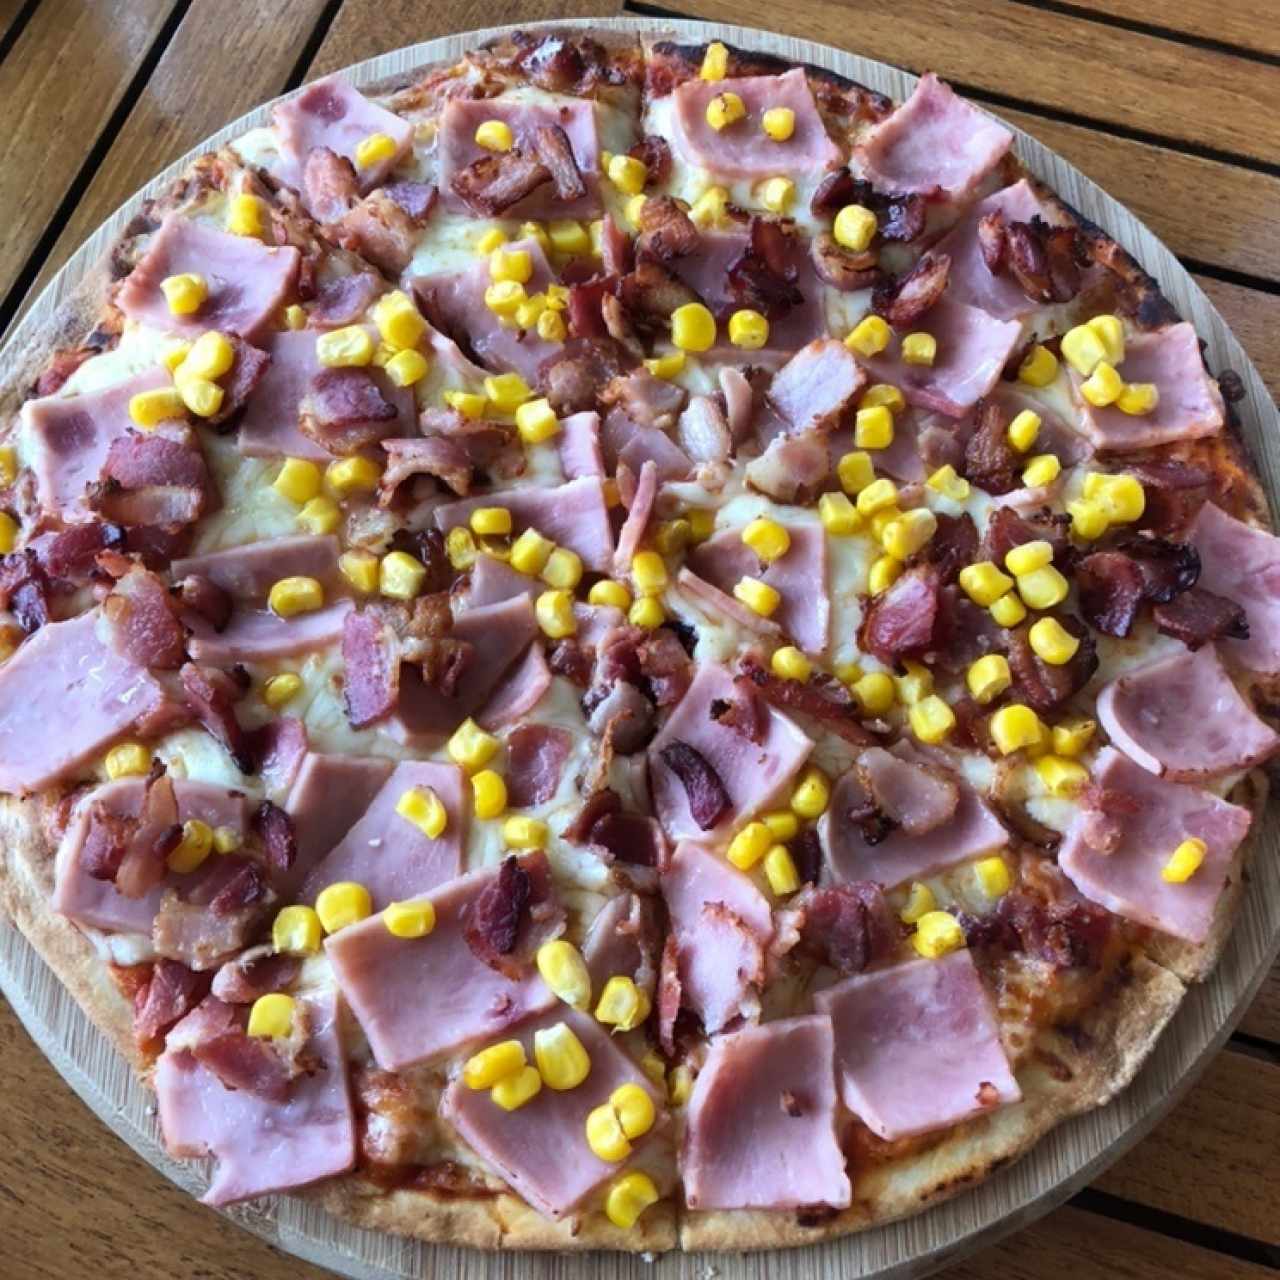 Pizza Bistro